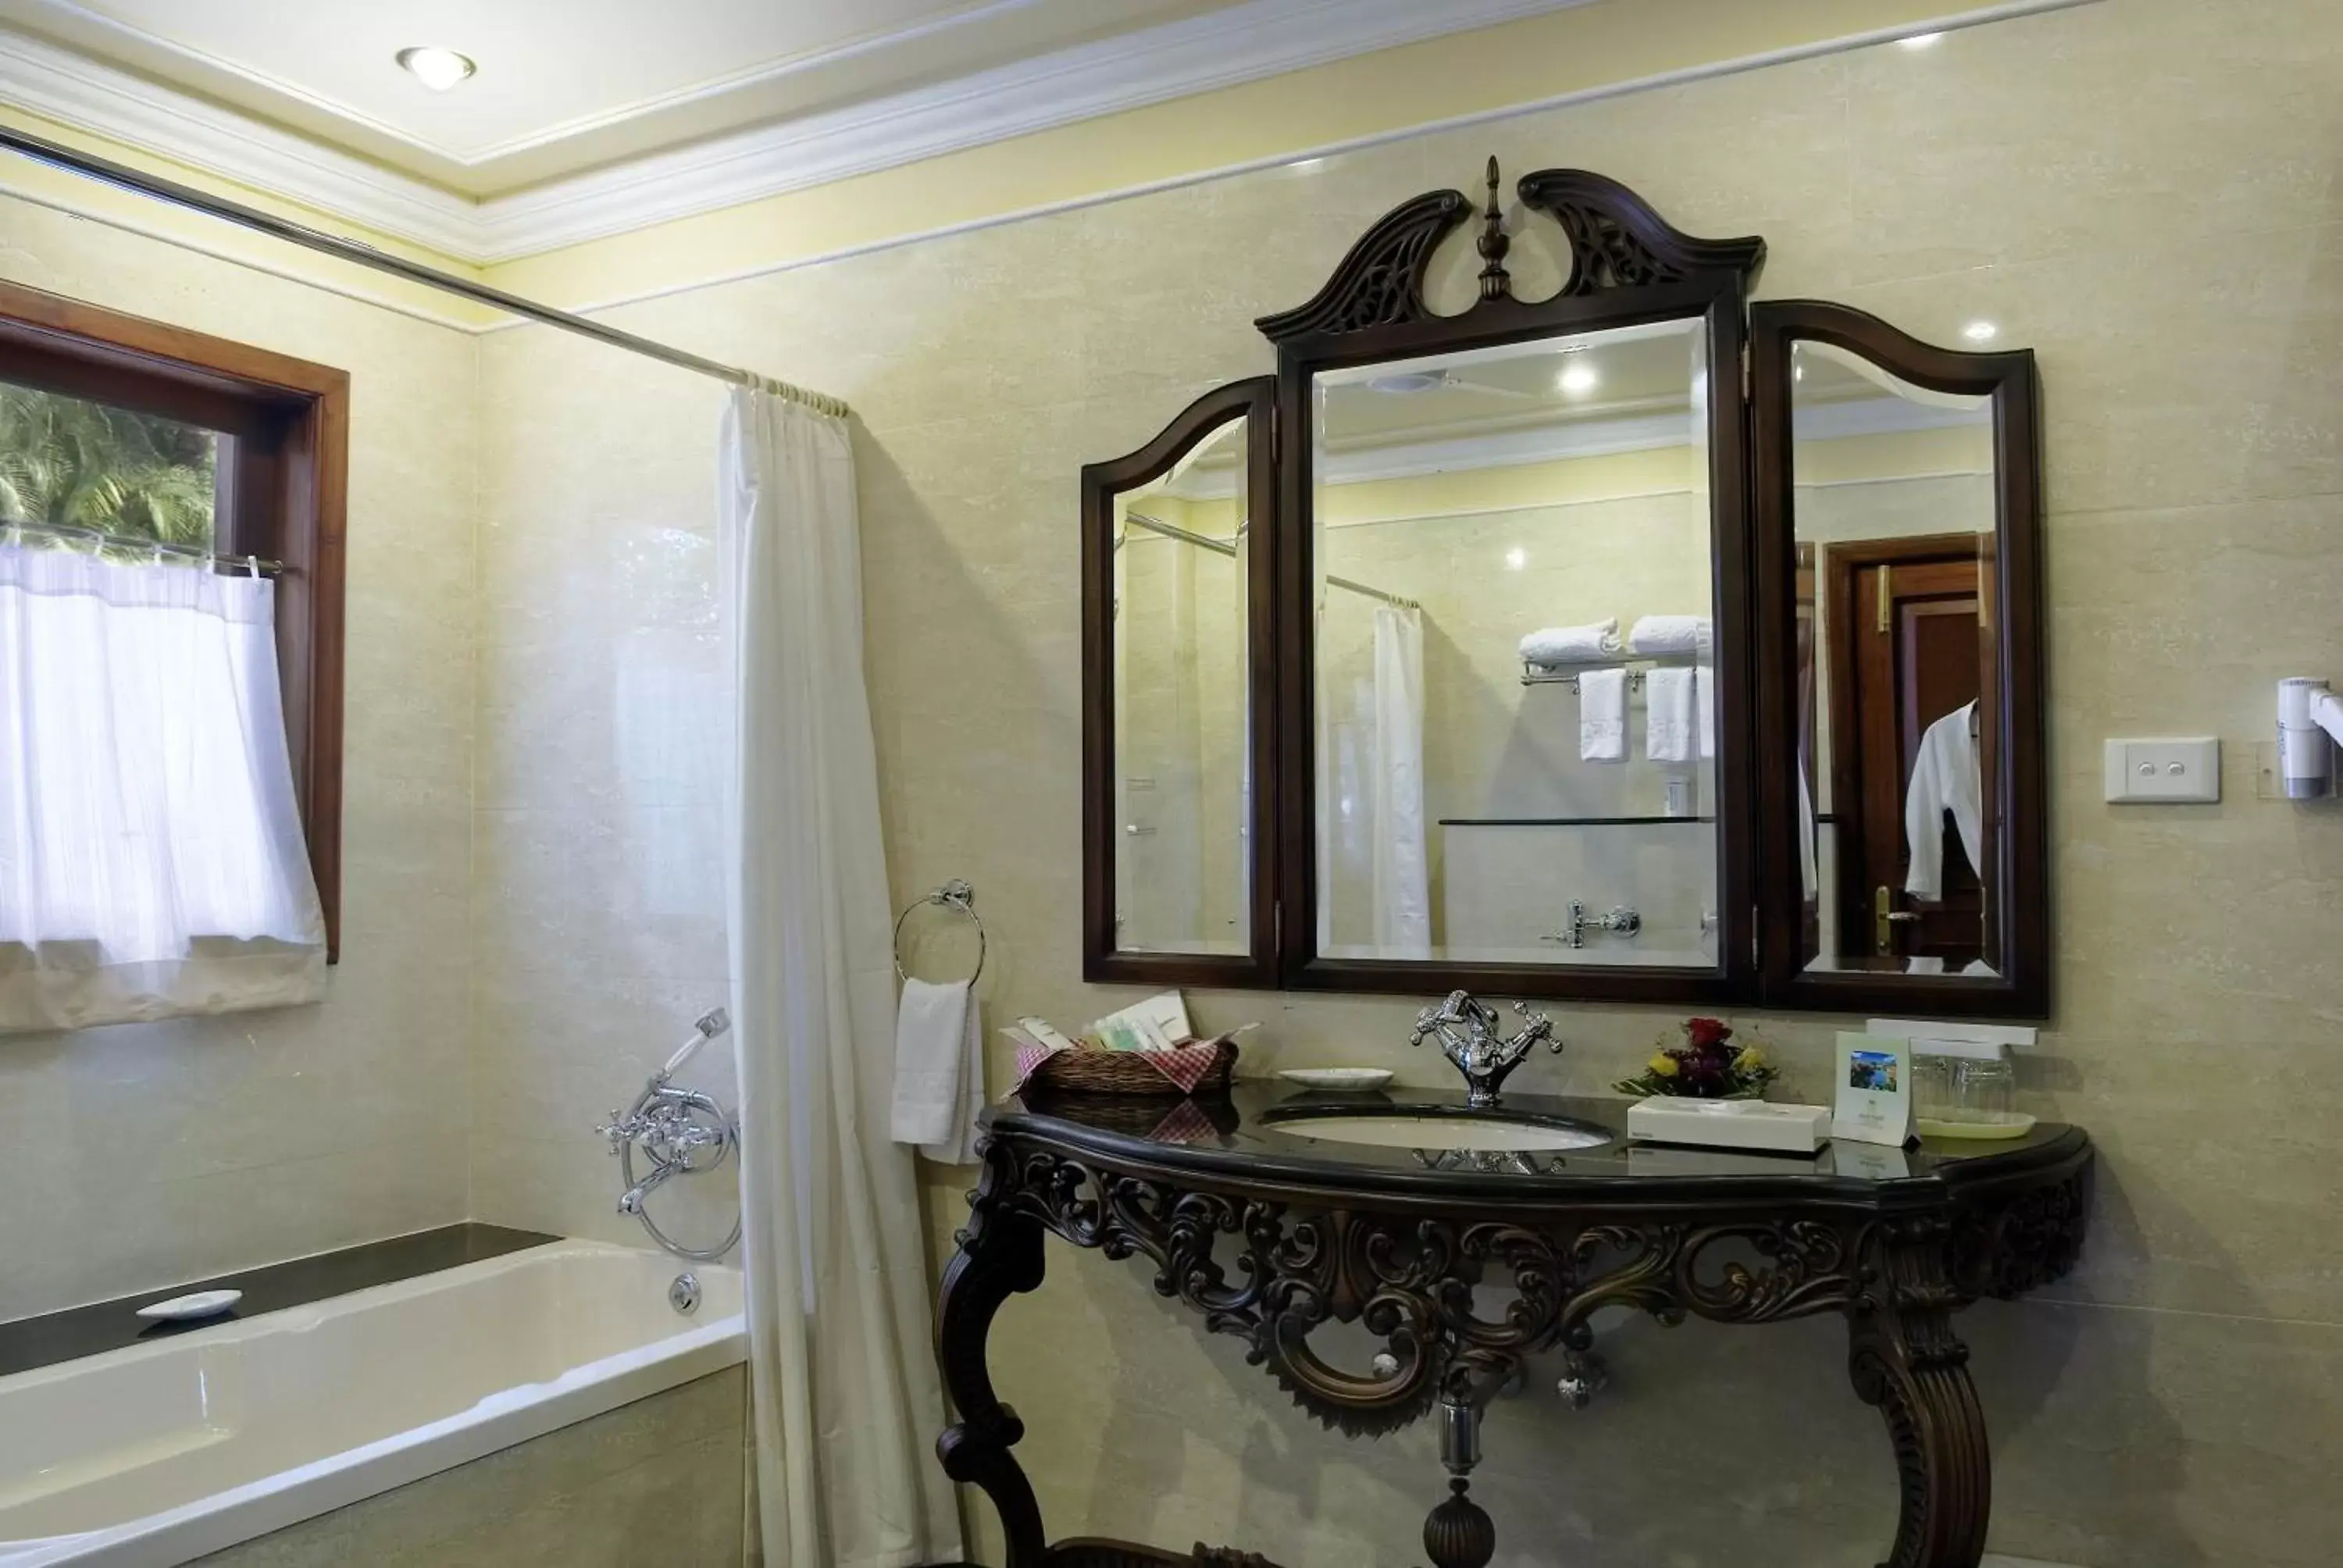 Bathroom in Mayfair Lagoon Hotel